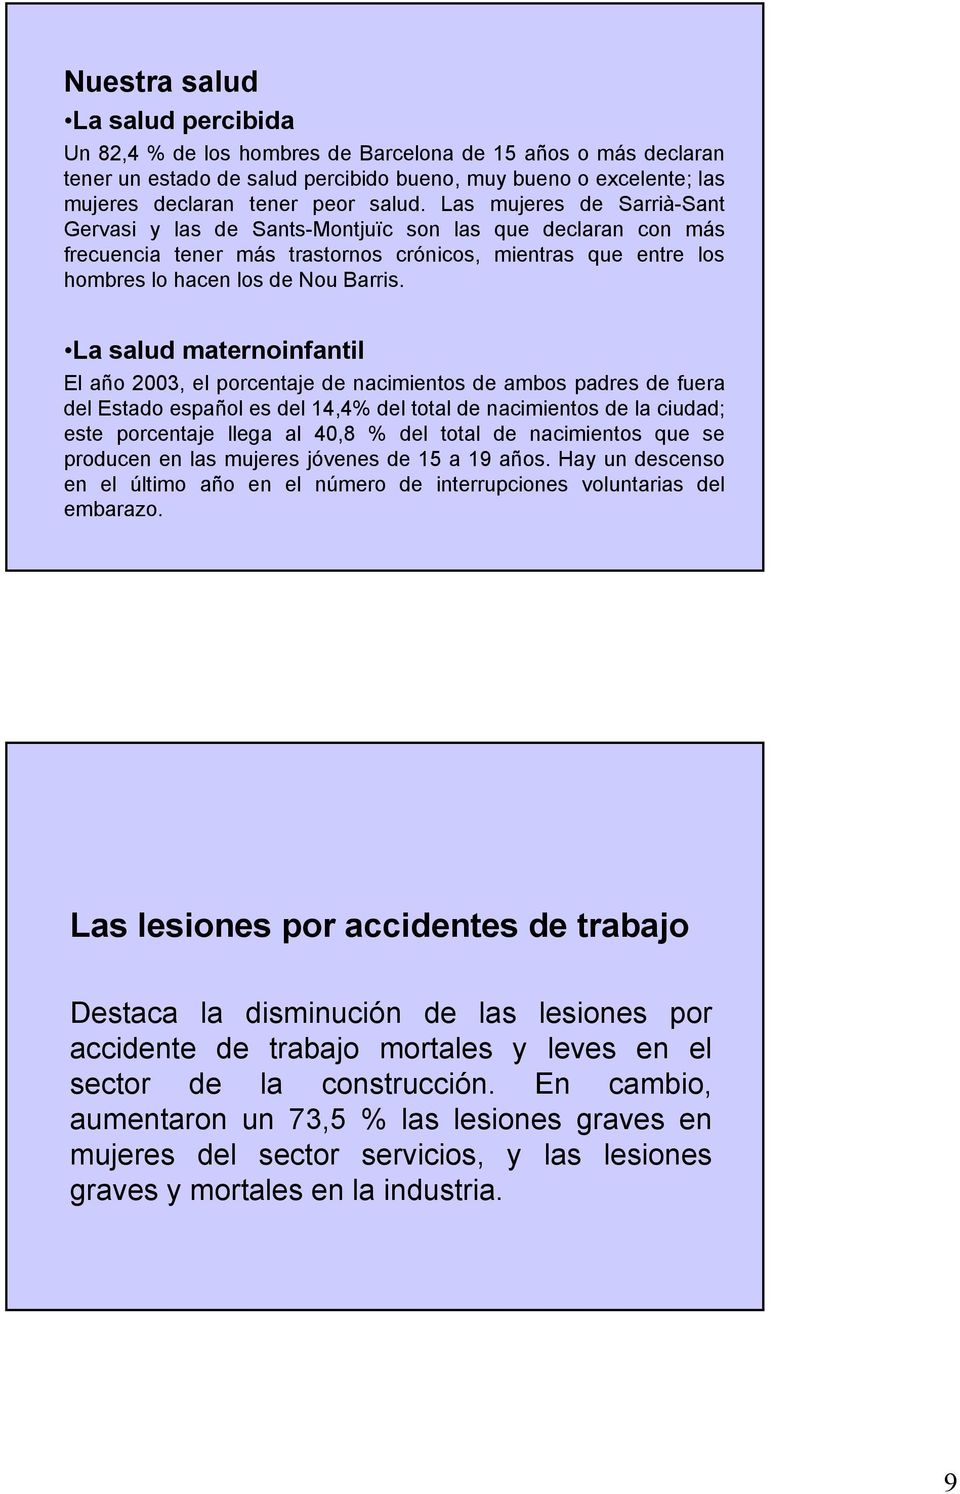 La salud maternoinfantil El año 2003, el porcentaje de nacimientos de ambos padres de fuera del Estado español es del 14,4% del total de nacimientos de la ciudad; este porcentaje llega al 40,8 % del